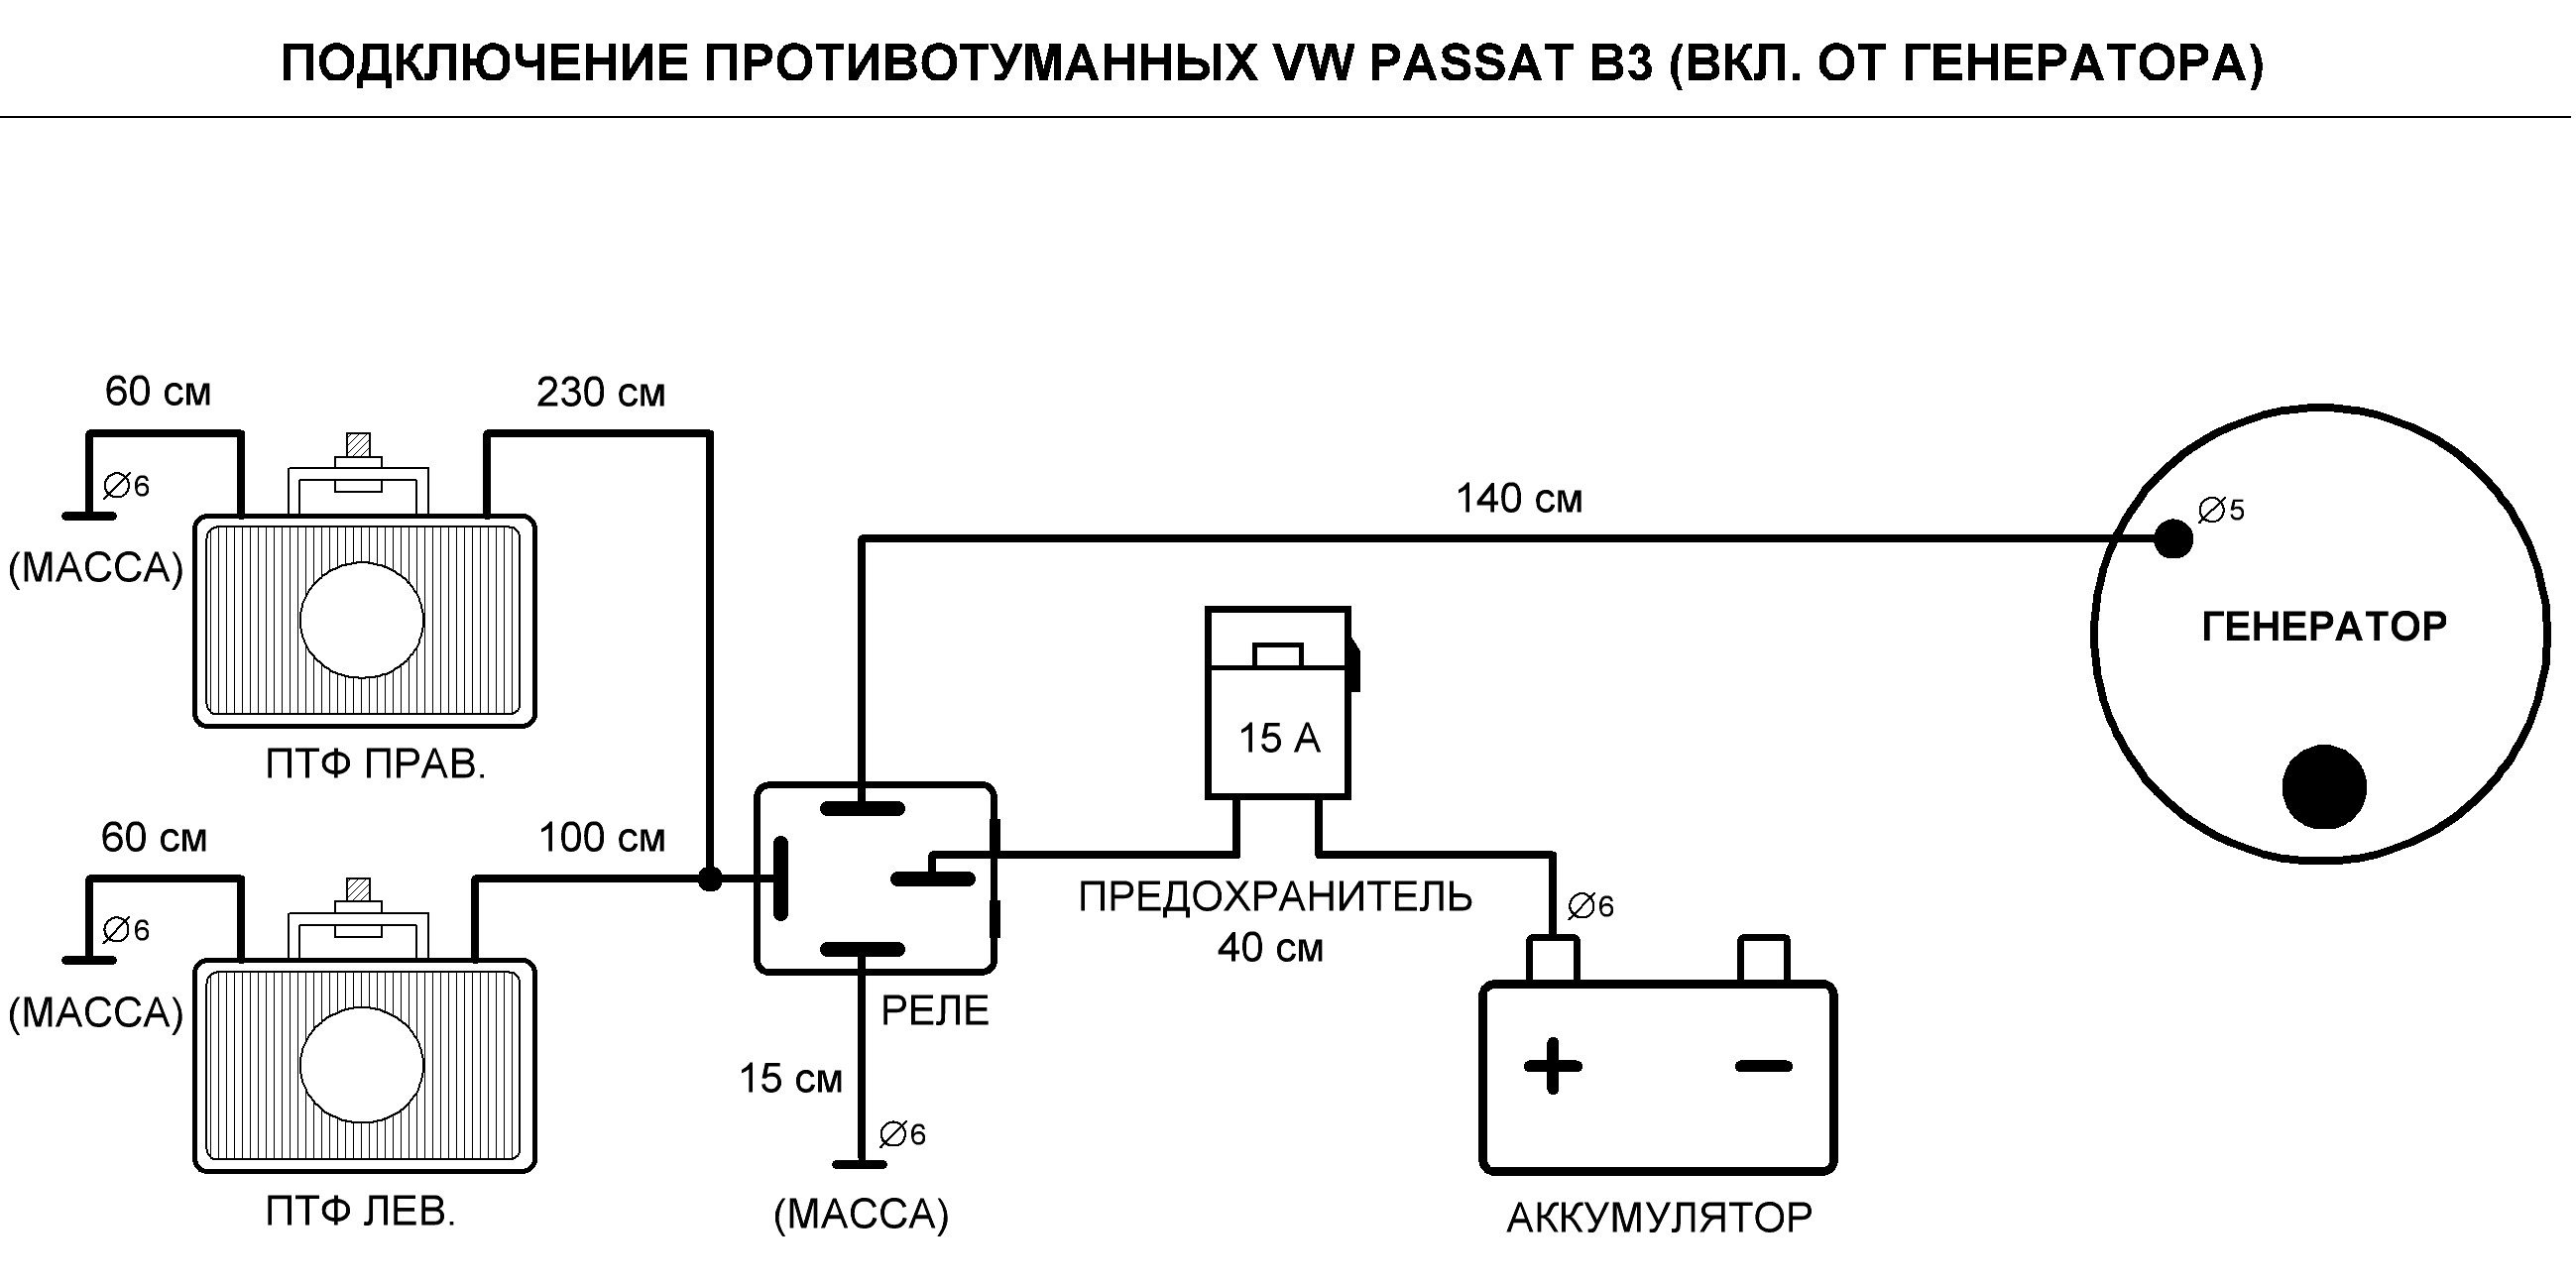 Ремонт Фольксваген Пассат Б5 своими руками: документация, фотоотчеты для VW Passat B5 (3B)